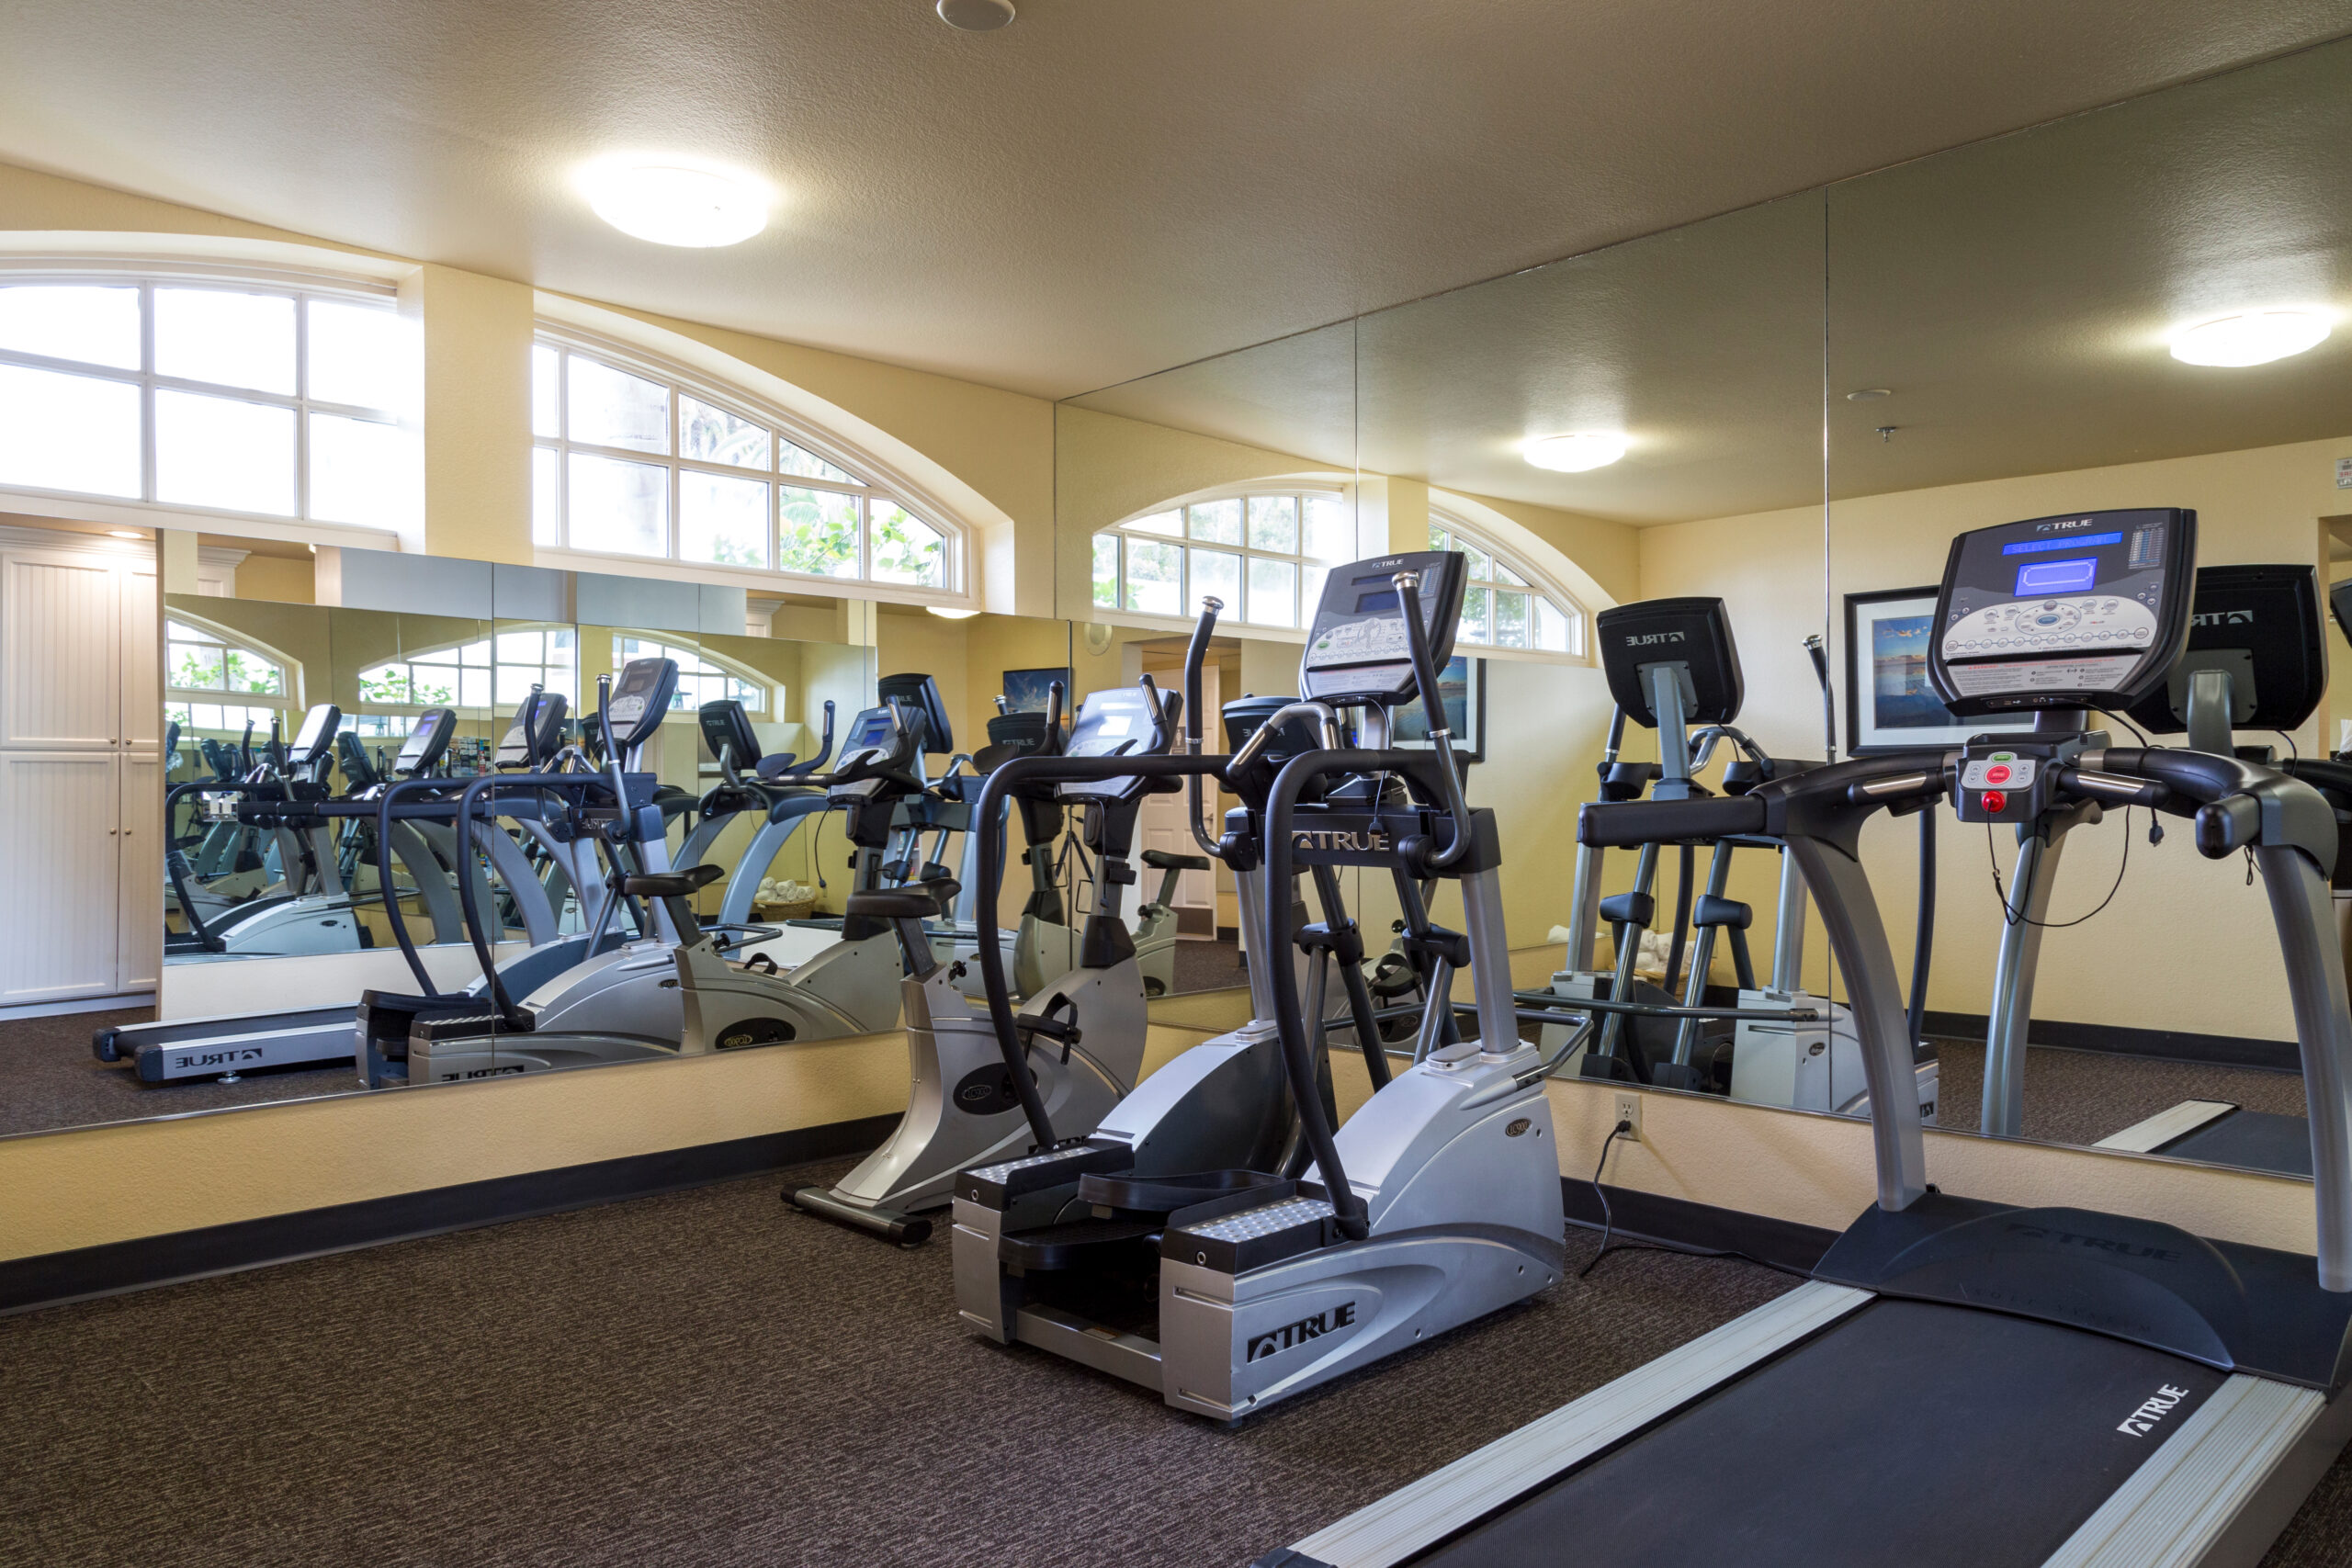 Fitness Center, elliptical, treadmill, stationary bike